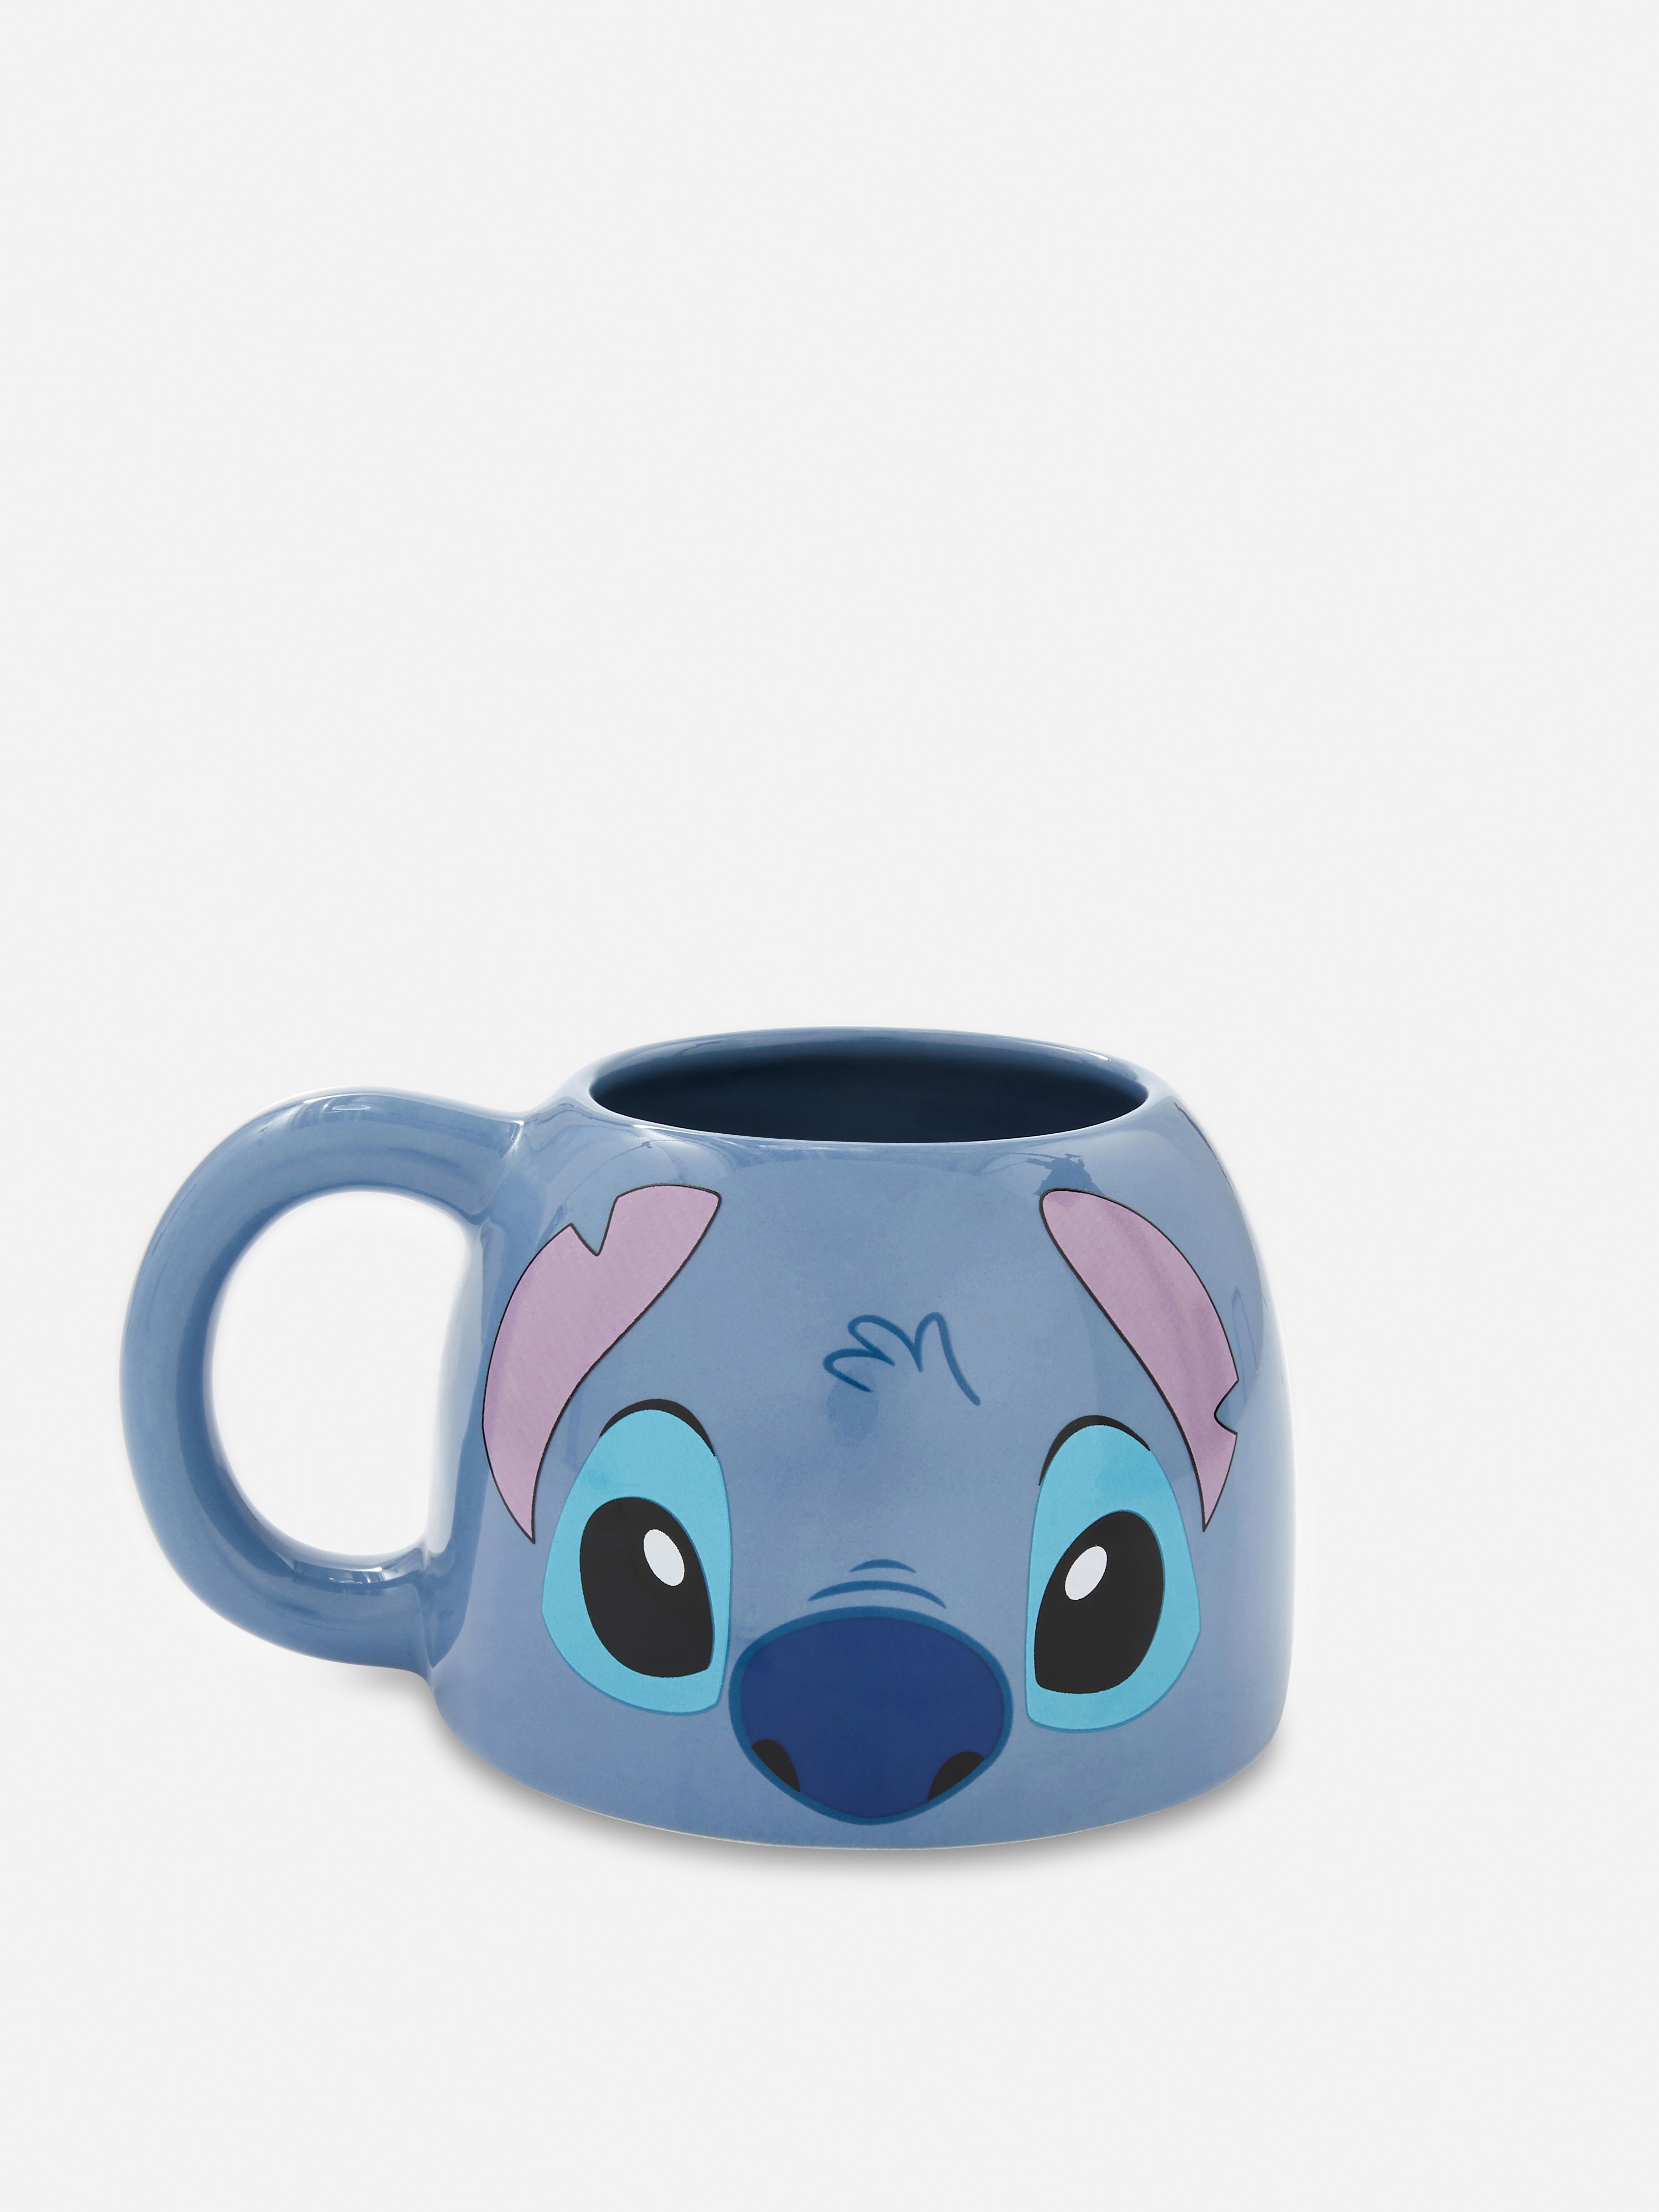 „Disney Lilo & Stitch“ Tasse mit Gesicht